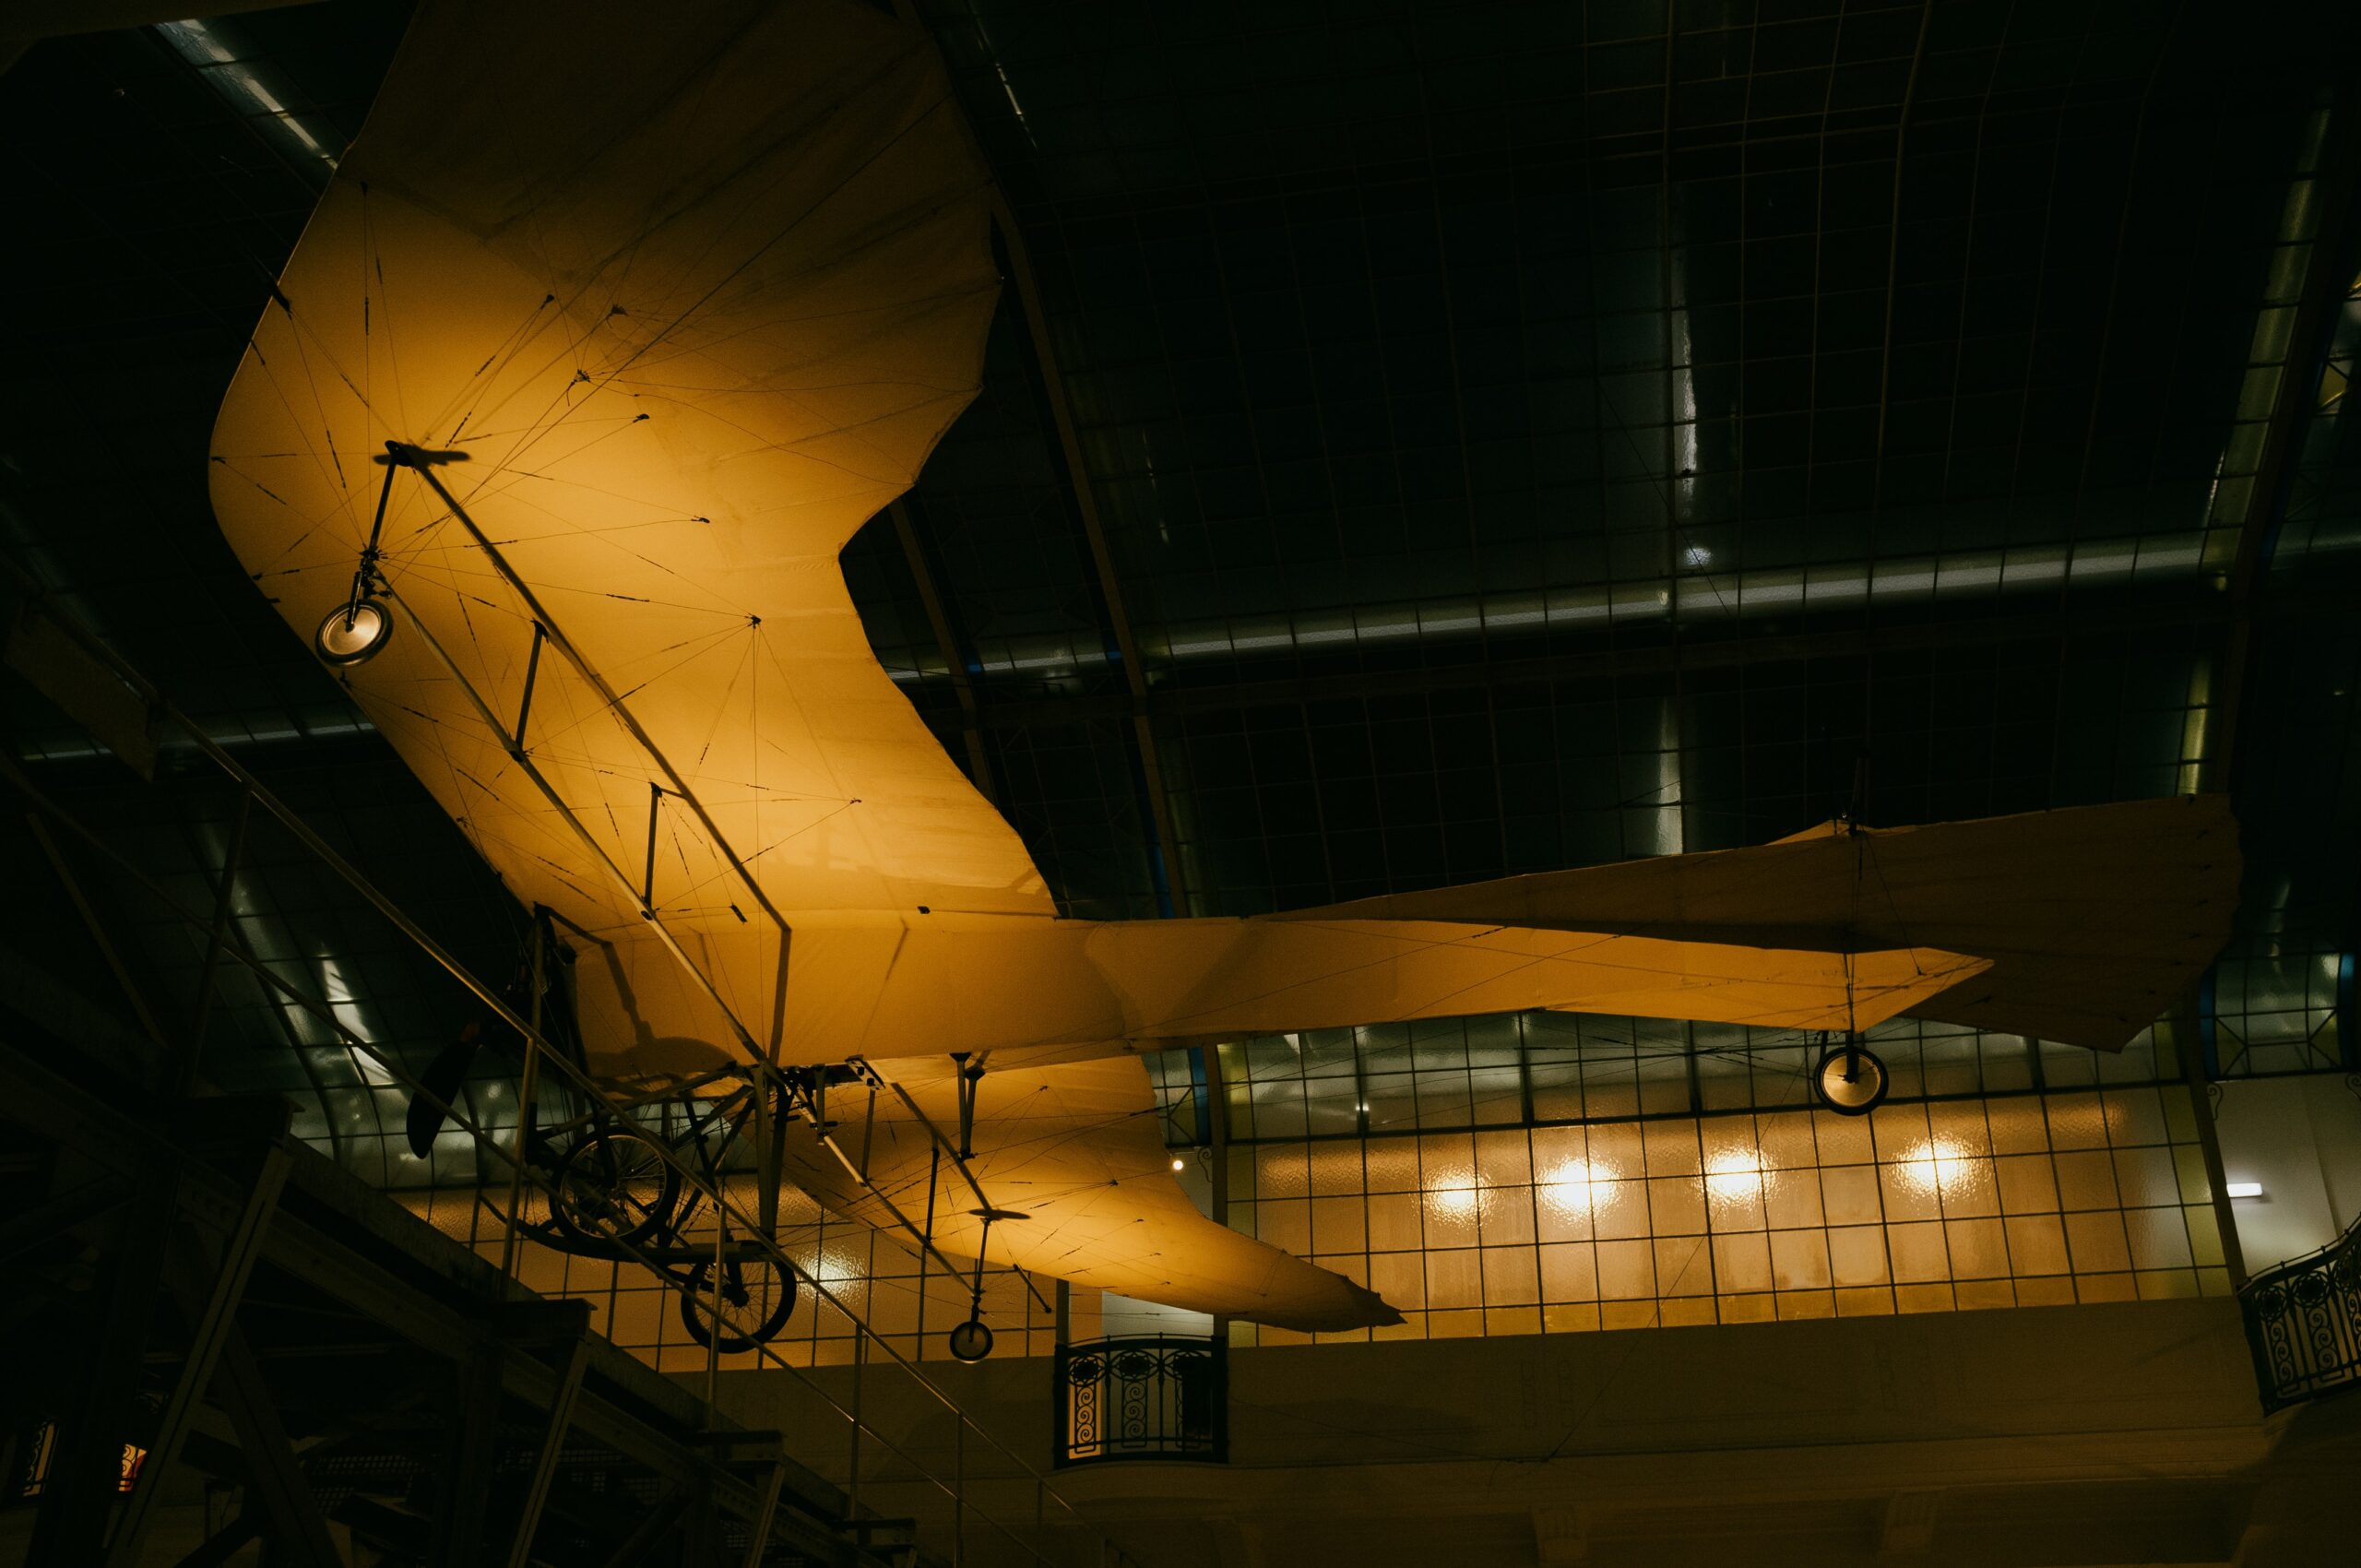 Ein altes Flugzeug welches in einem hohen Raum aufgehängt ist und welches orange beleuchtet ist.